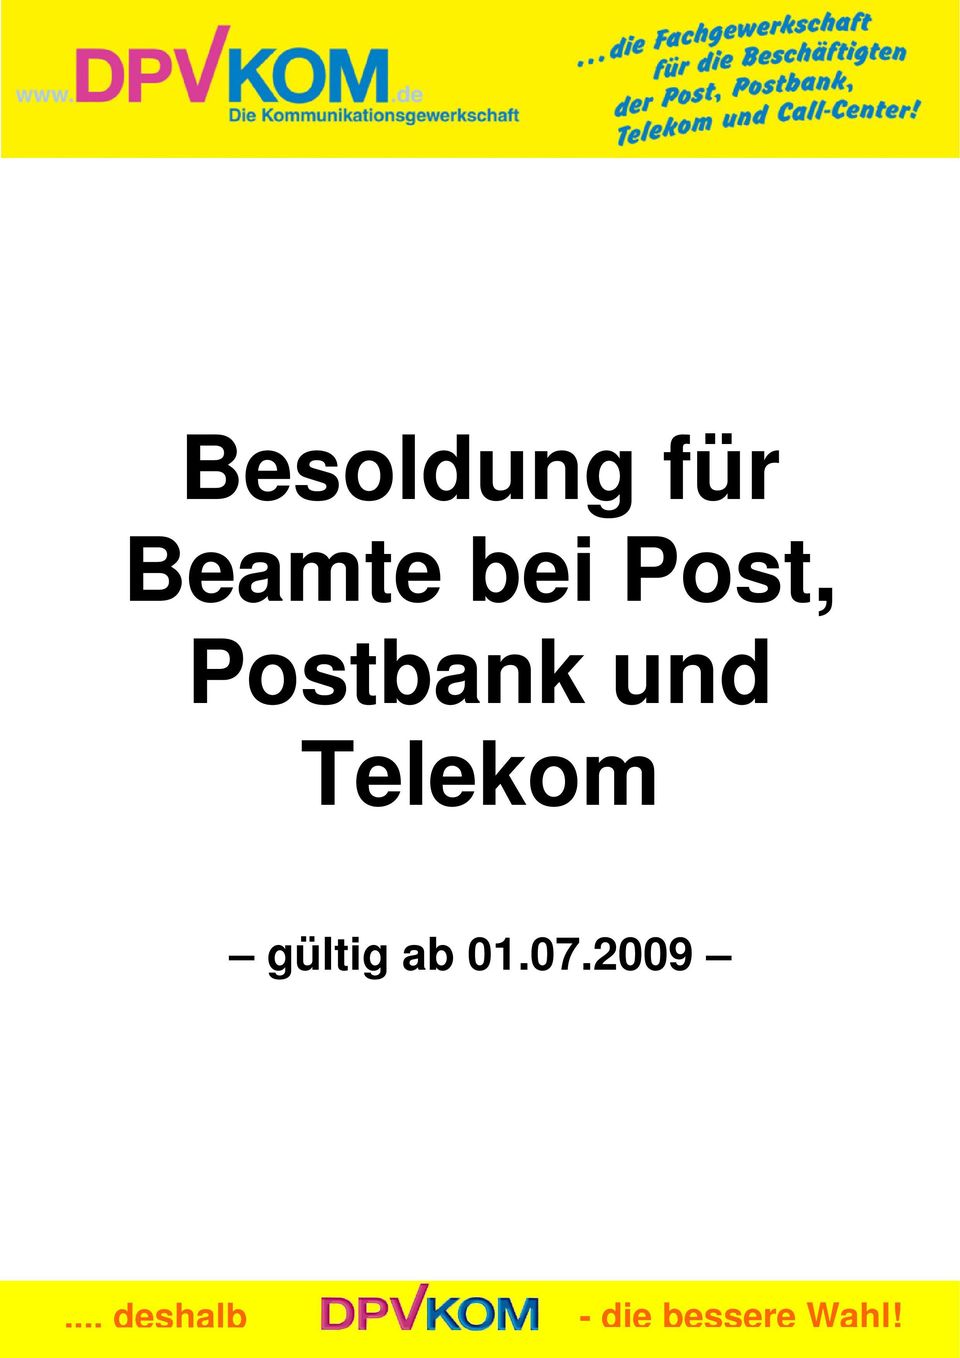 Telekom gültig ab 01.07.